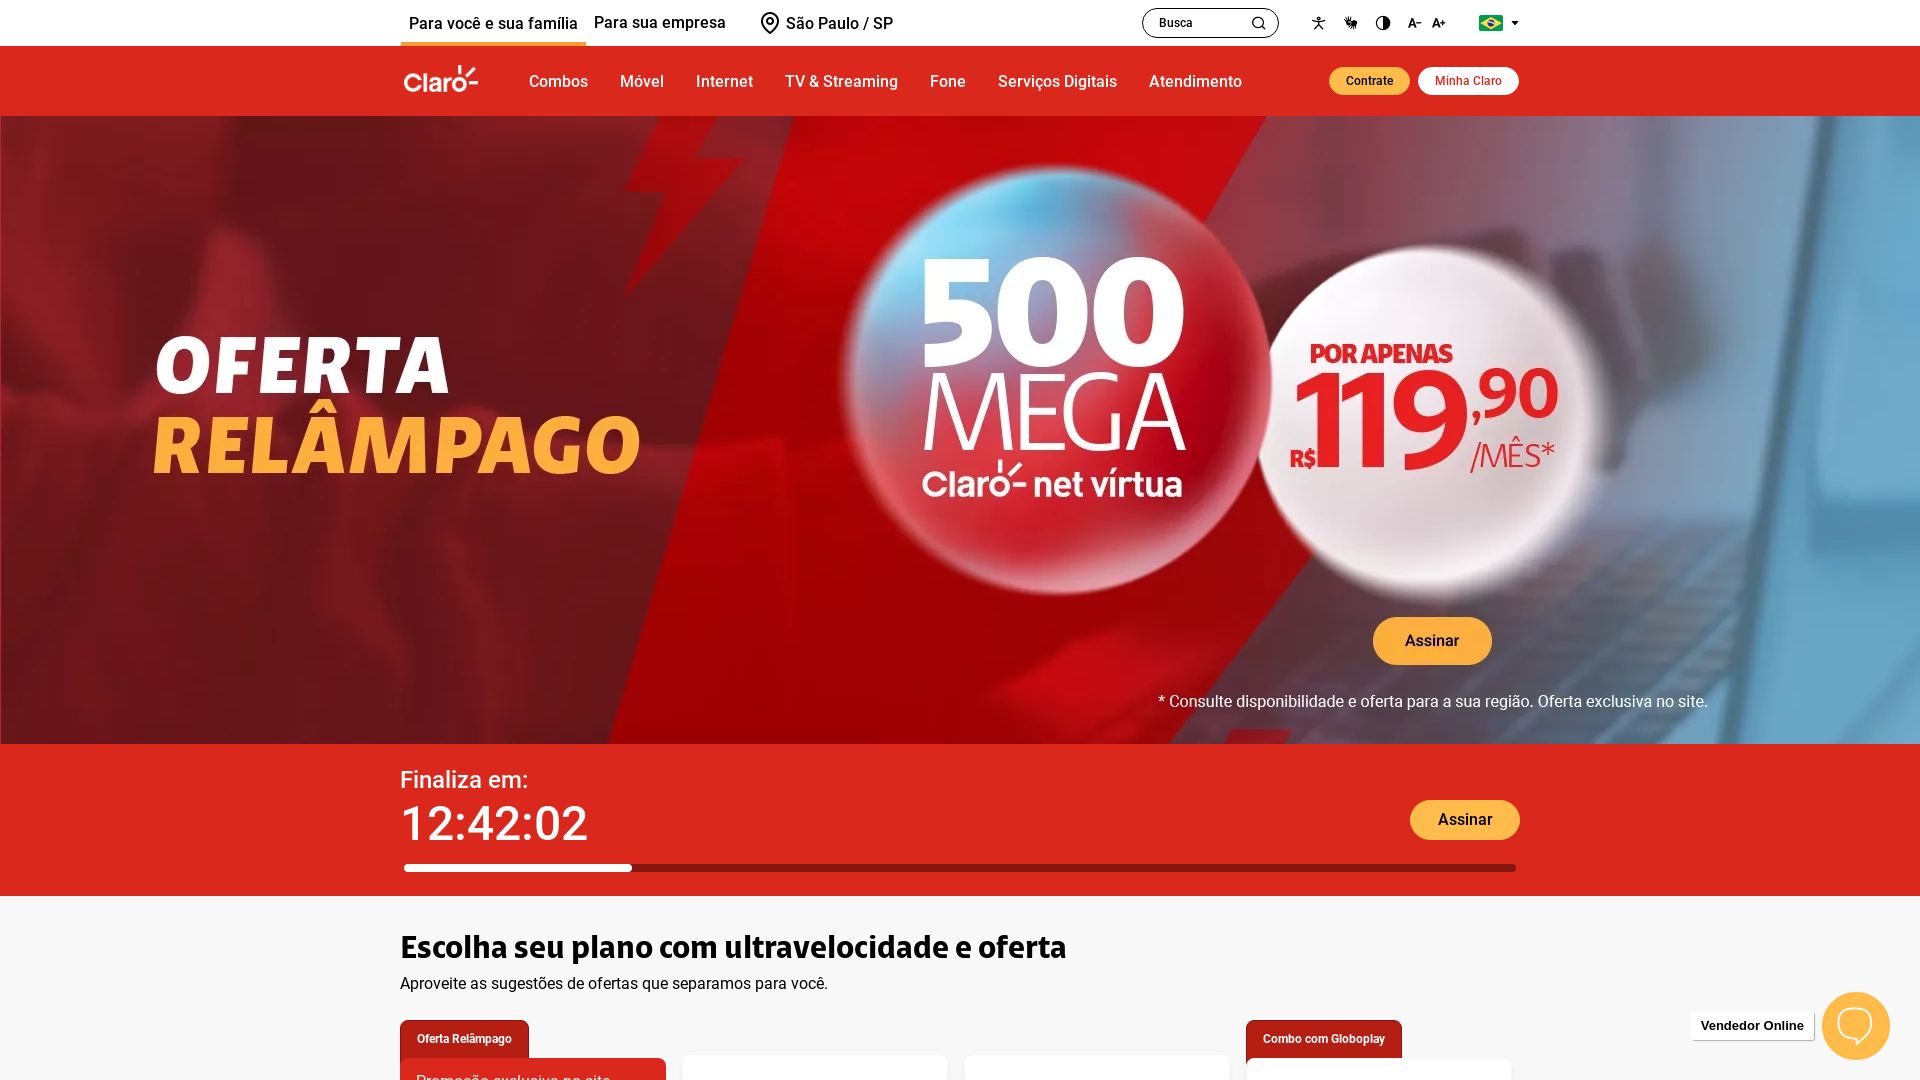 Estado web www.claro.com.br está   ONLINE